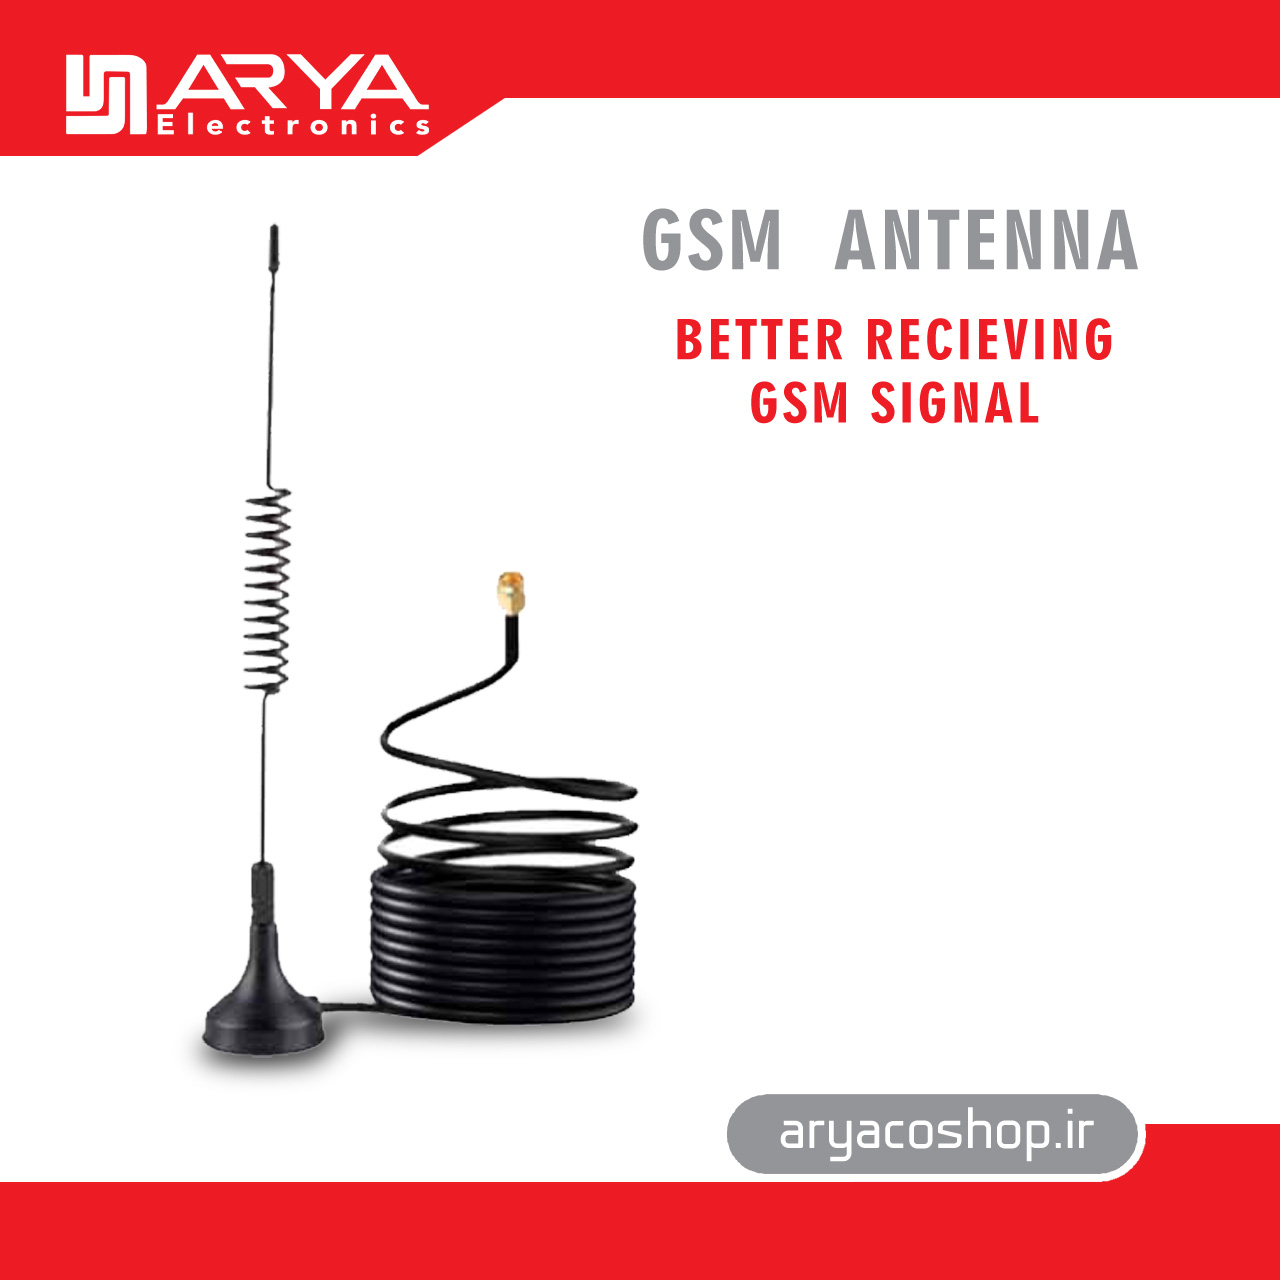 GSM ANTENNA BETTER RECEIVING GSM SIGNAL